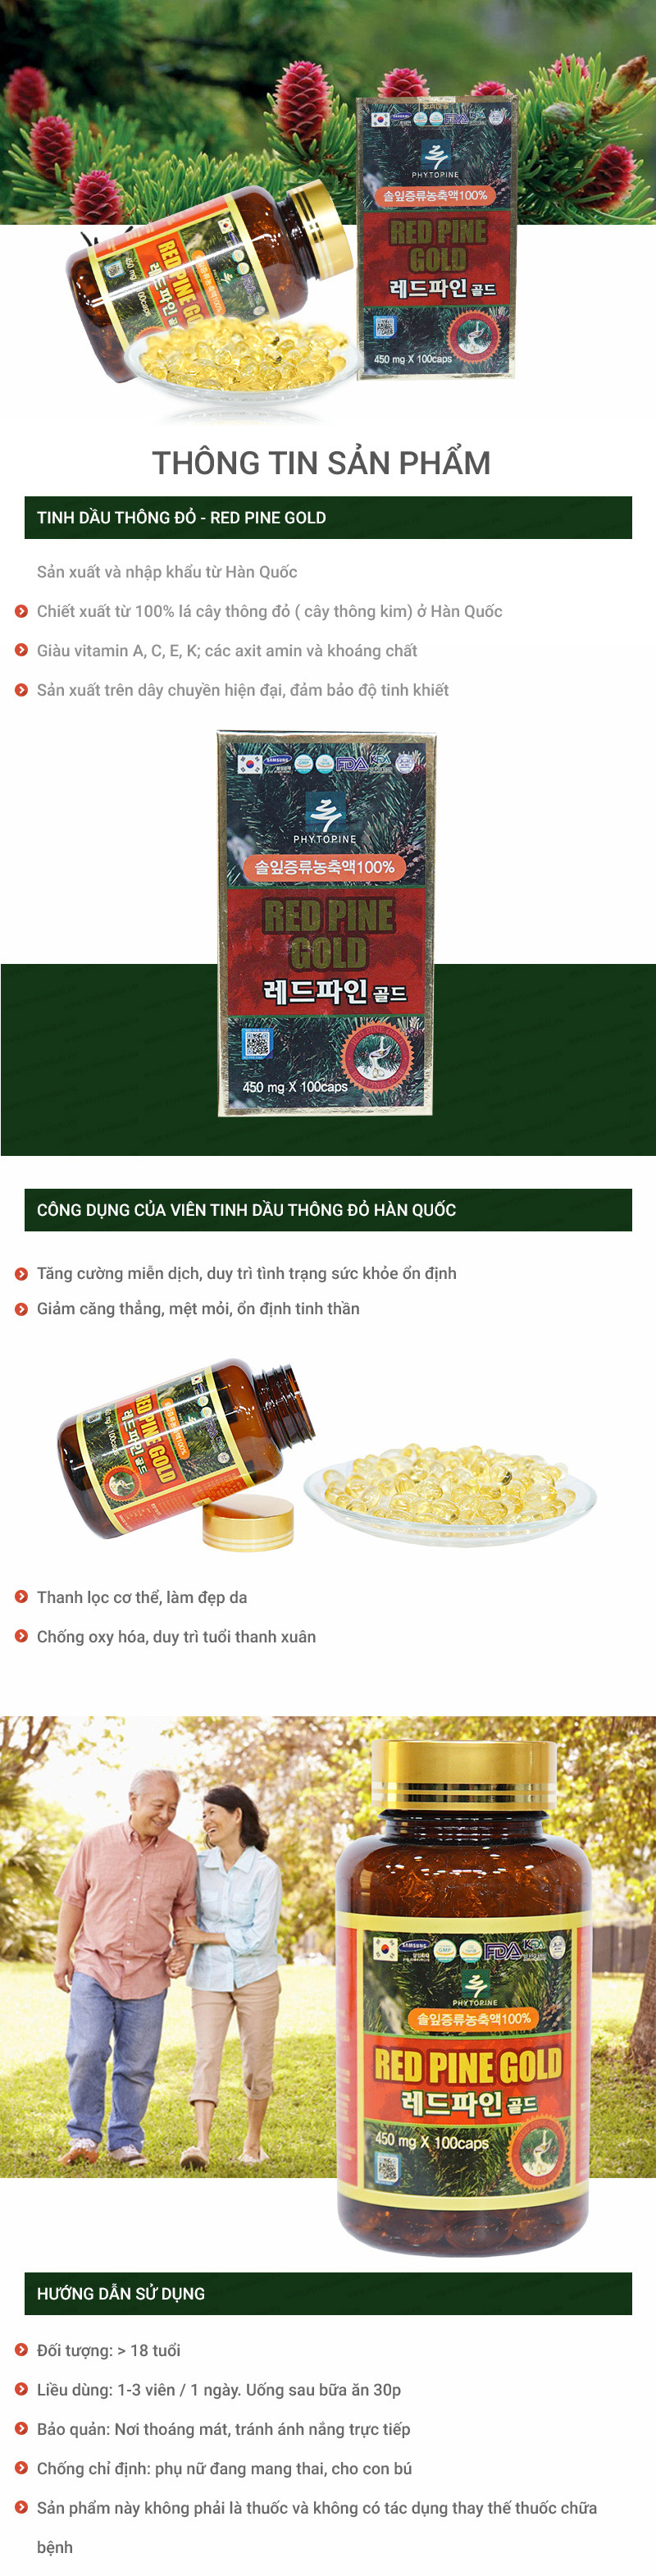 Tinh dầu thông đỏ+1 lọ chiết xuất hồng sâm Hàn Quốc & đông trùng hạ thảo+ 1 hũ trà mật ong chanh